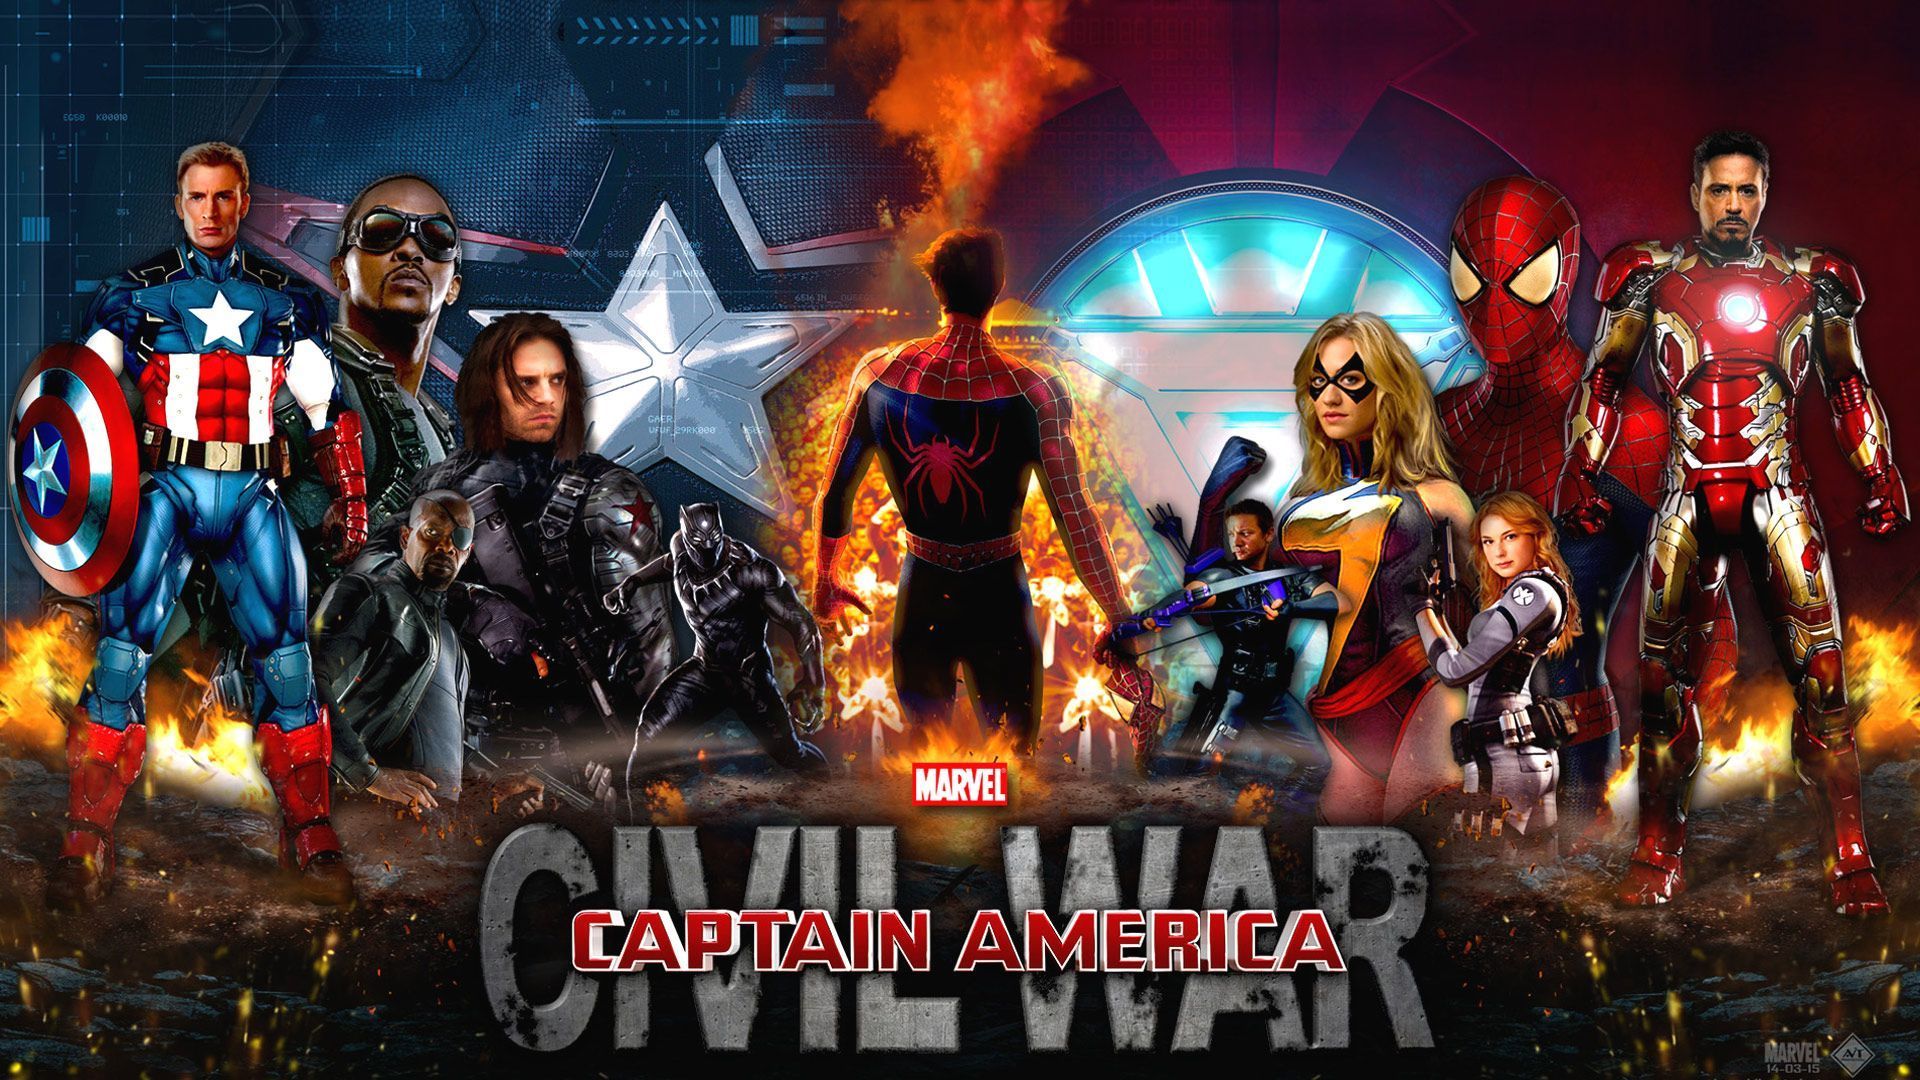 Captain America Civil War wallpaper – Free full hd wallpapers for ...